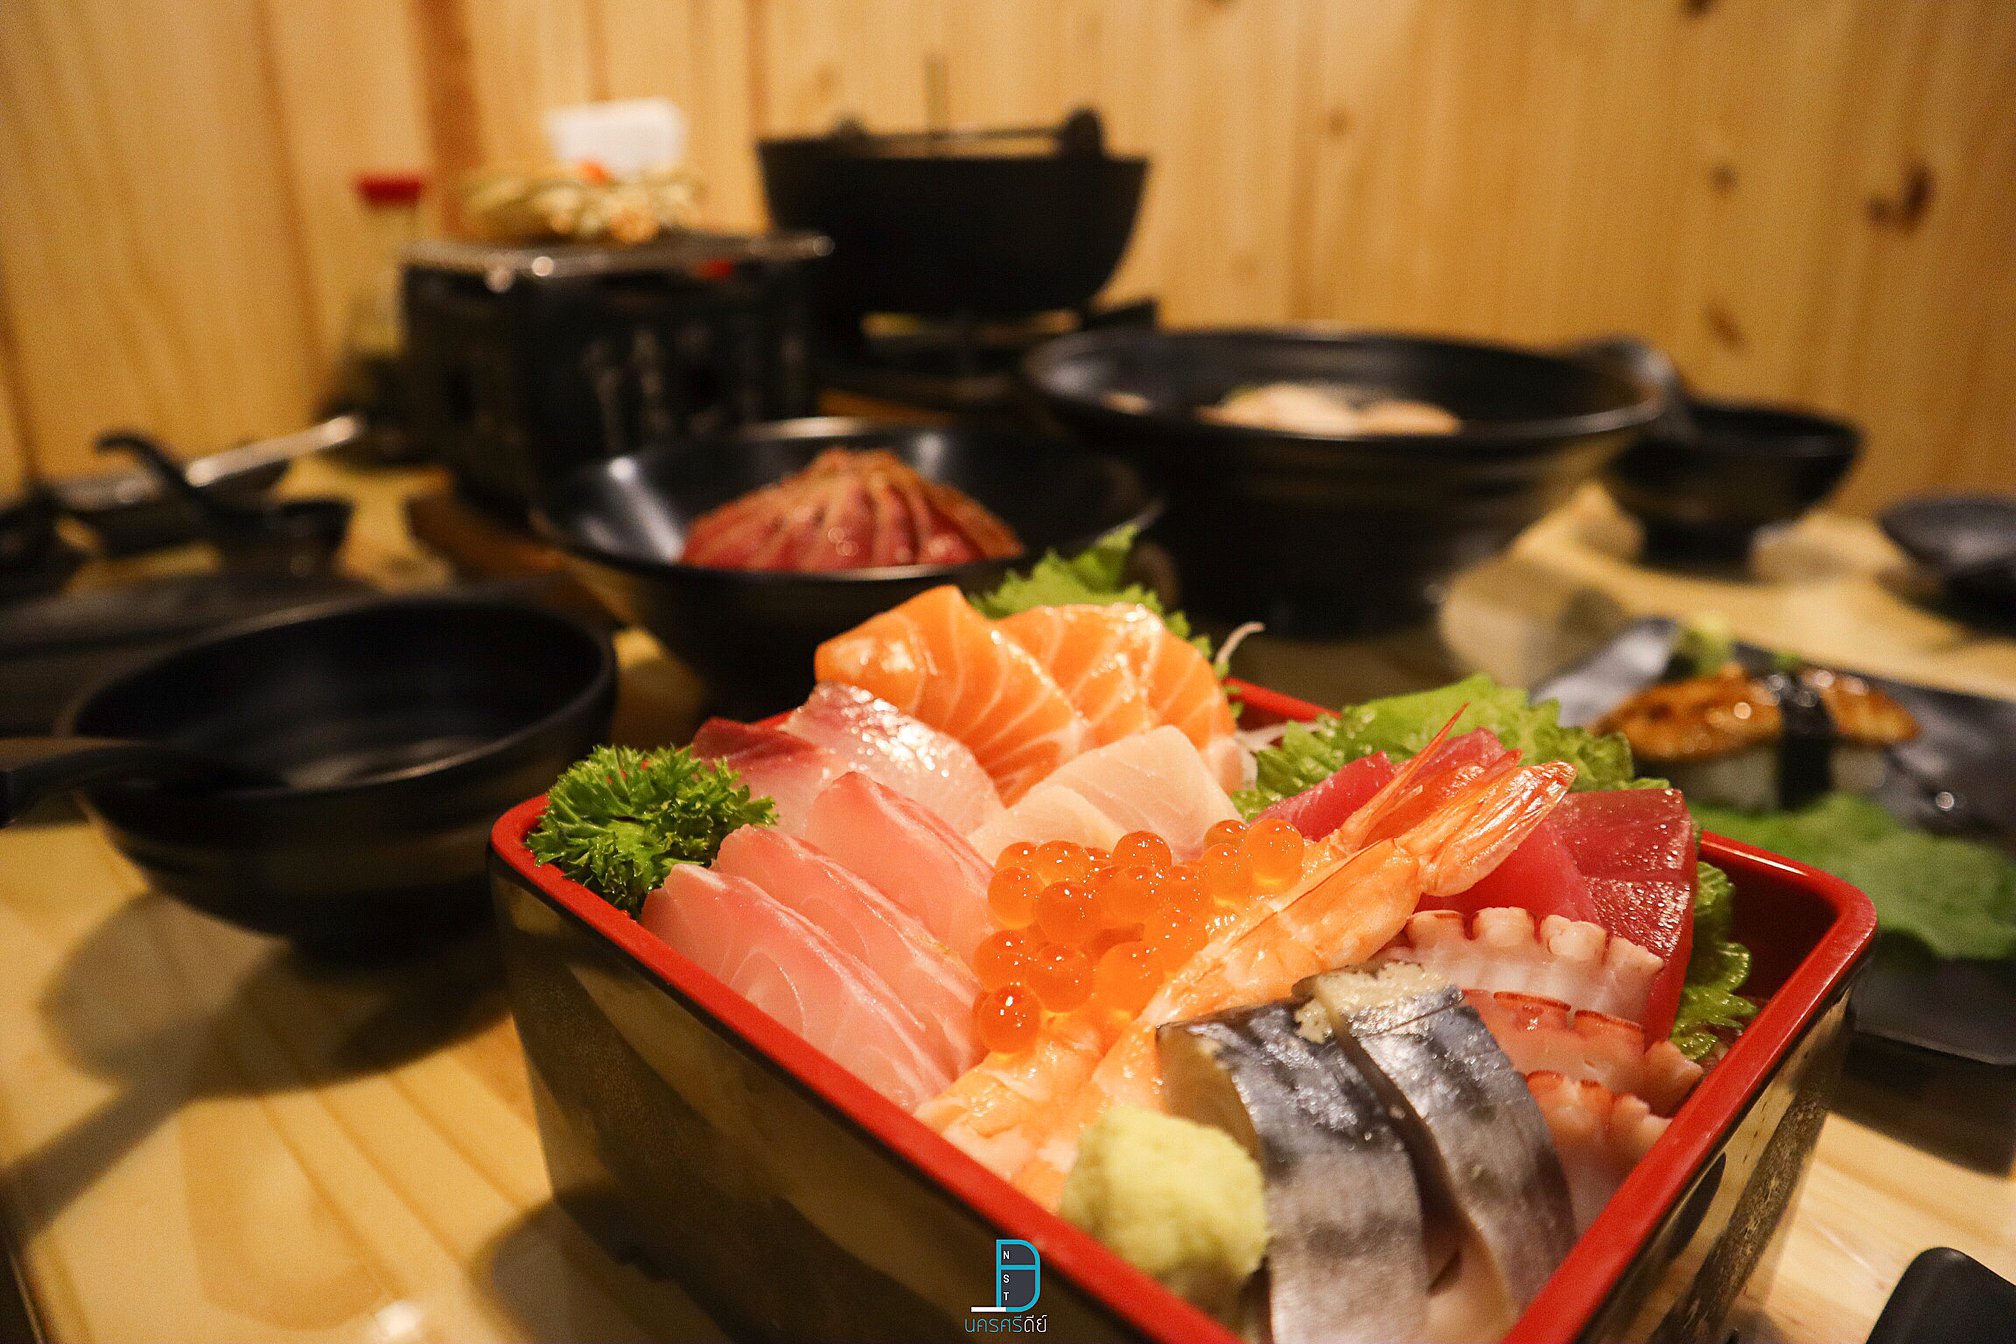  ข้าวหน้าปลาดิบรวม
 ร้านอาหารญี่ปุ่น,นครศรีธรรมราช,ของกิน,ร้านอร่อย,อำเภอเมือง,กินอะไรดี,ของหรอย,อาหารญี่ปุ่น